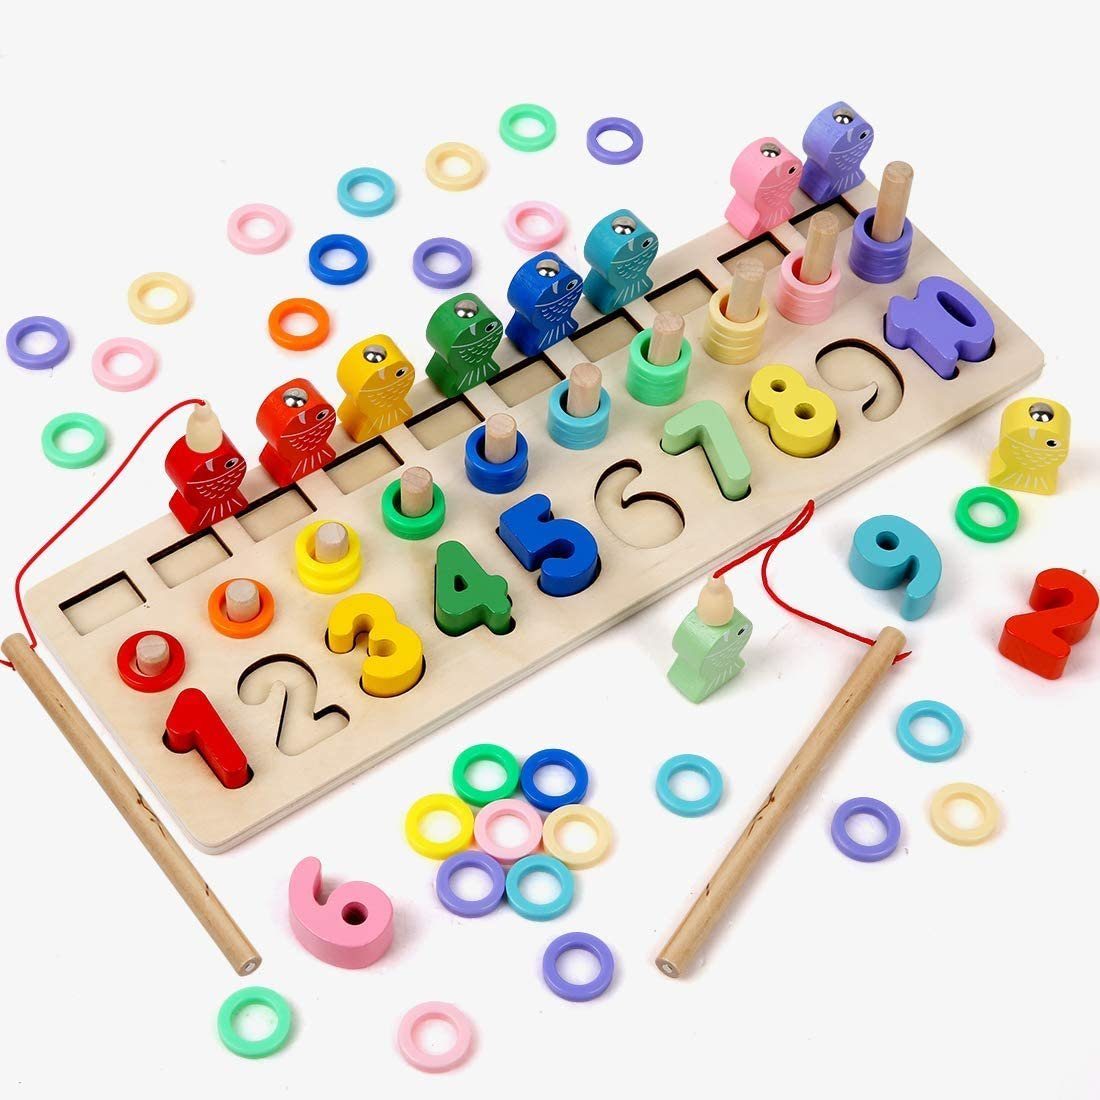 Holz Regenbogen Bausteine Montessori Stapelspielzeug Holzspielzeug Lernspielzeug 